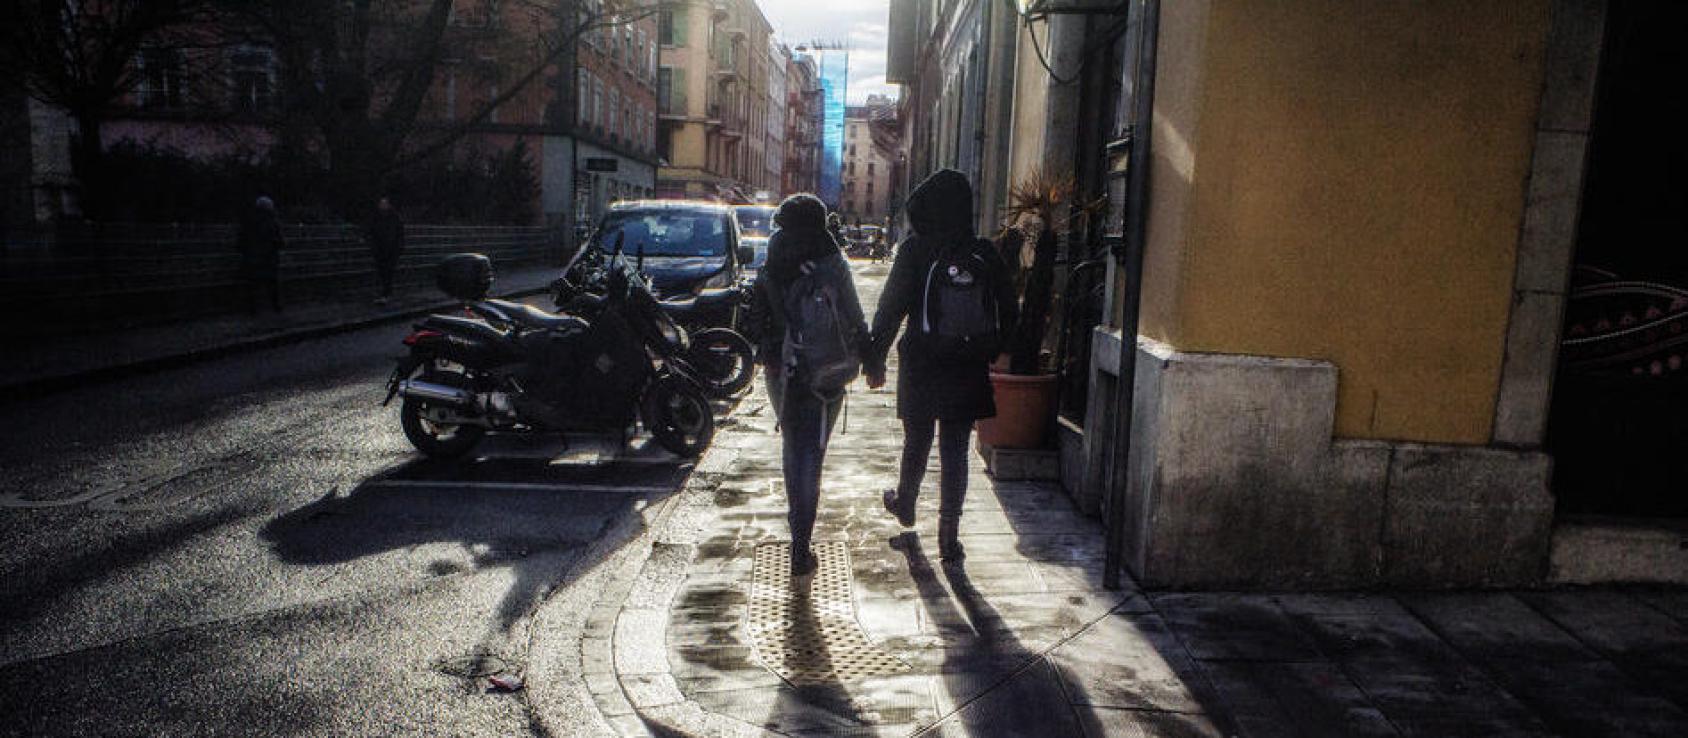 两人手牵手在街上走的背影。